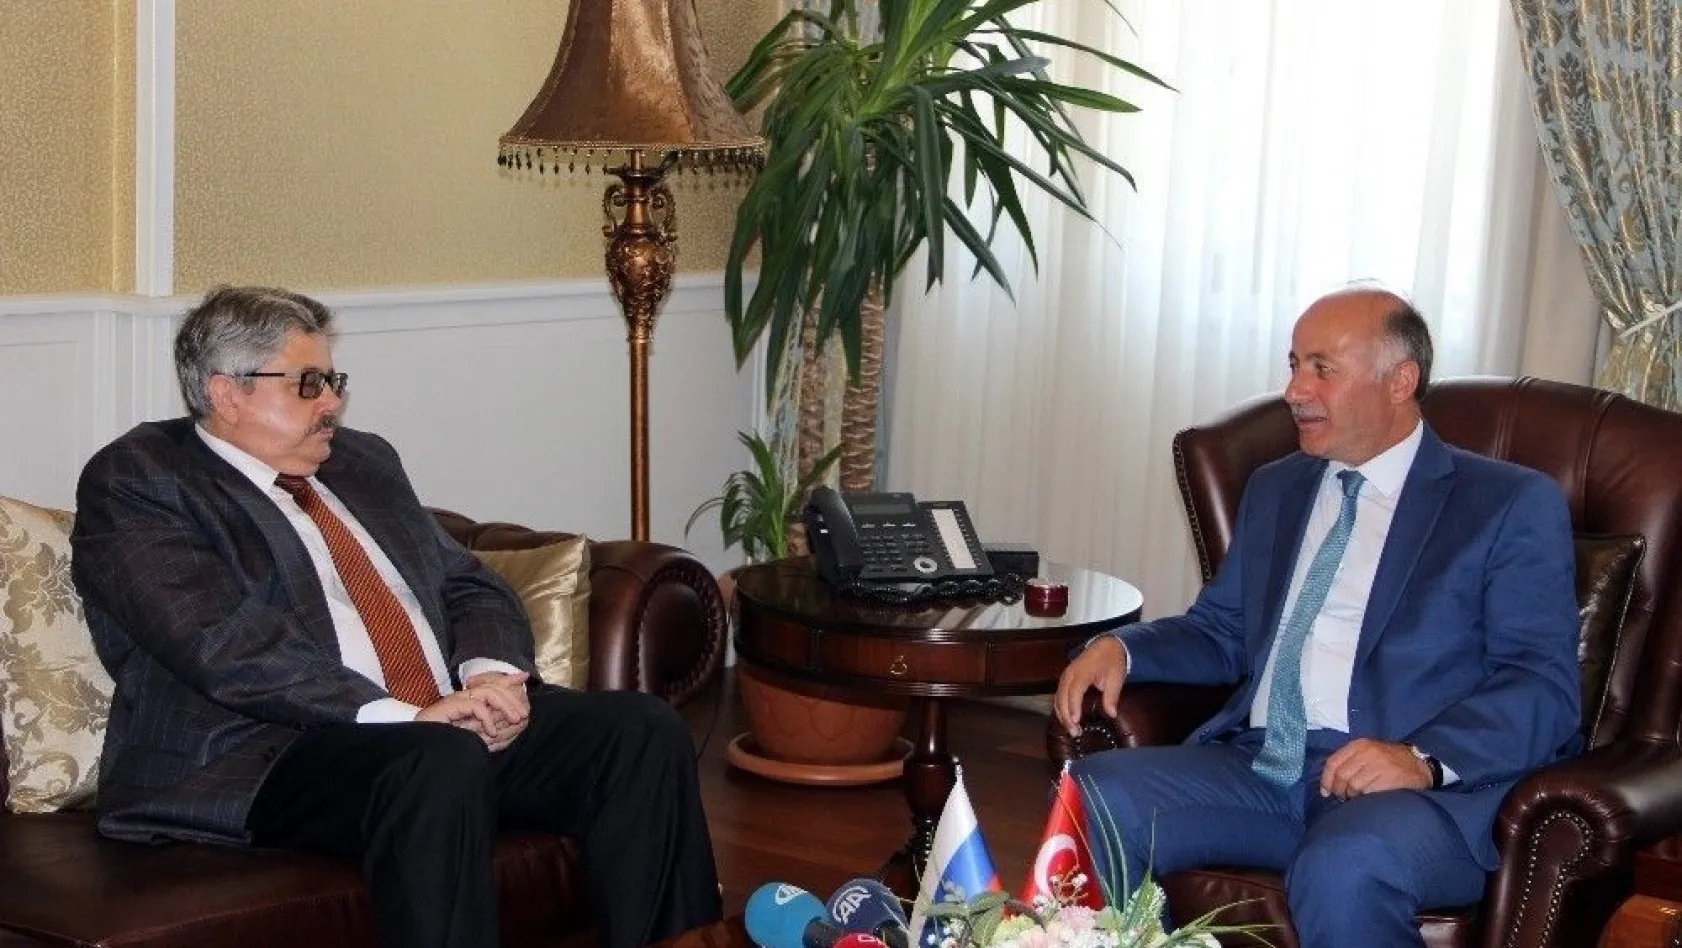 Rusya Ankara Büyükelçisi Yerhov'dan Suriye açıklaması
